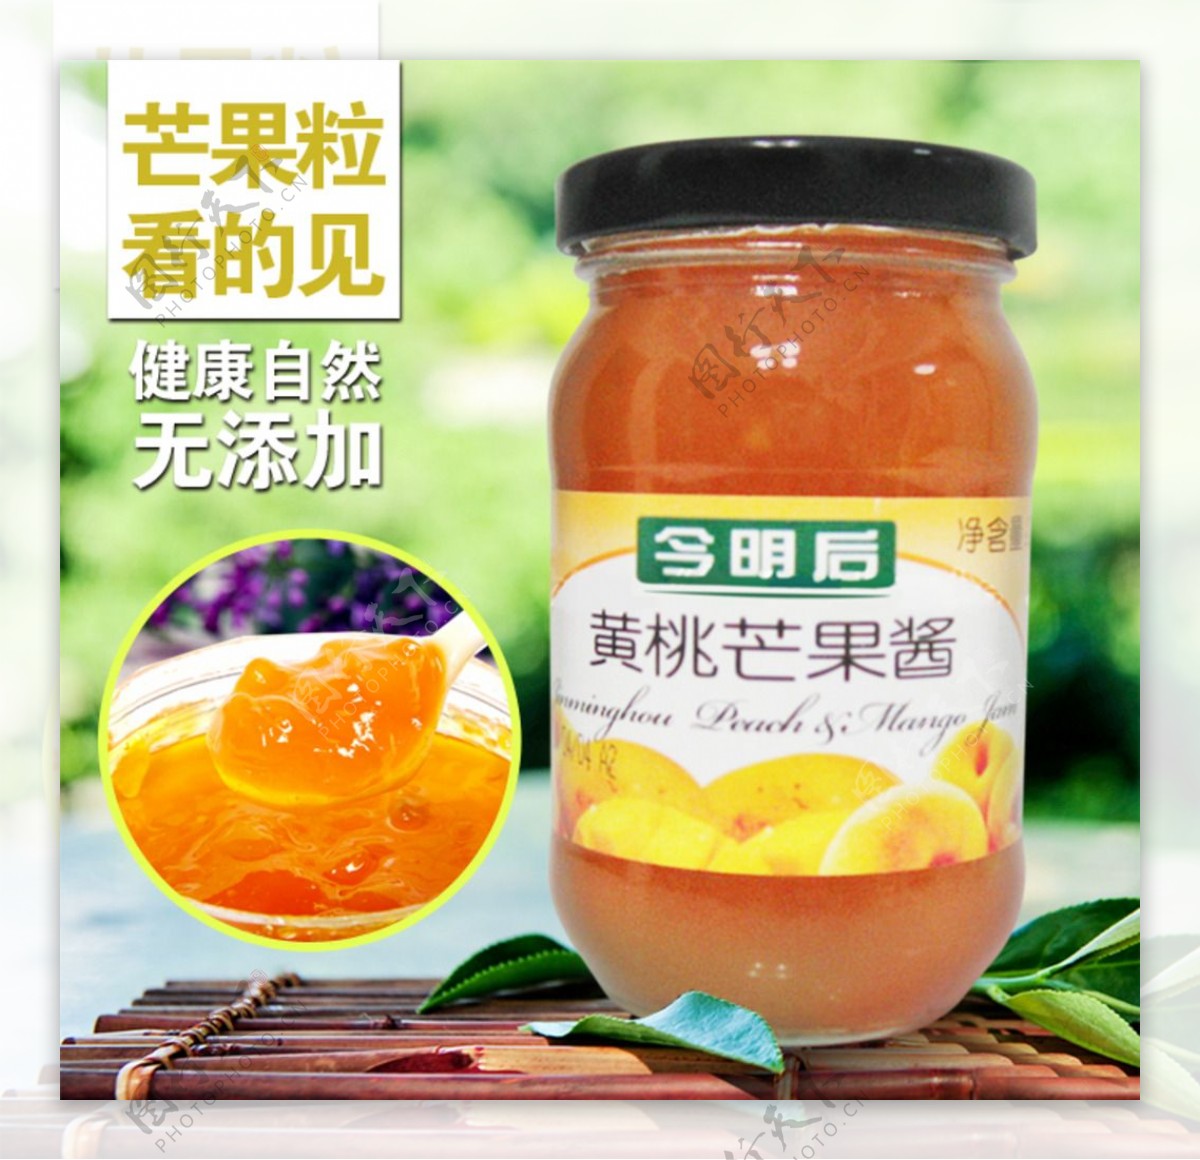 黄桃芒果酱淘宝产品主图设计